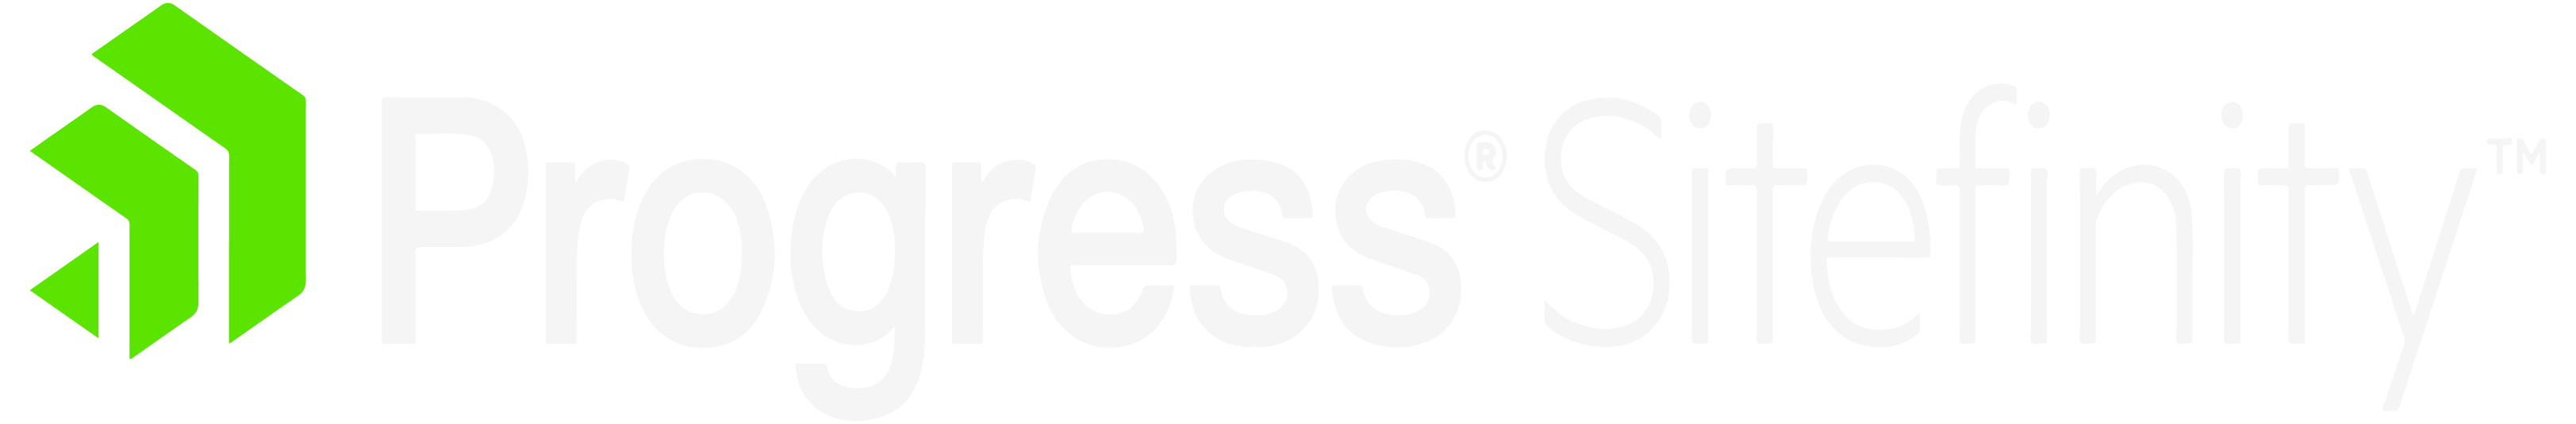 sitefinity-logo